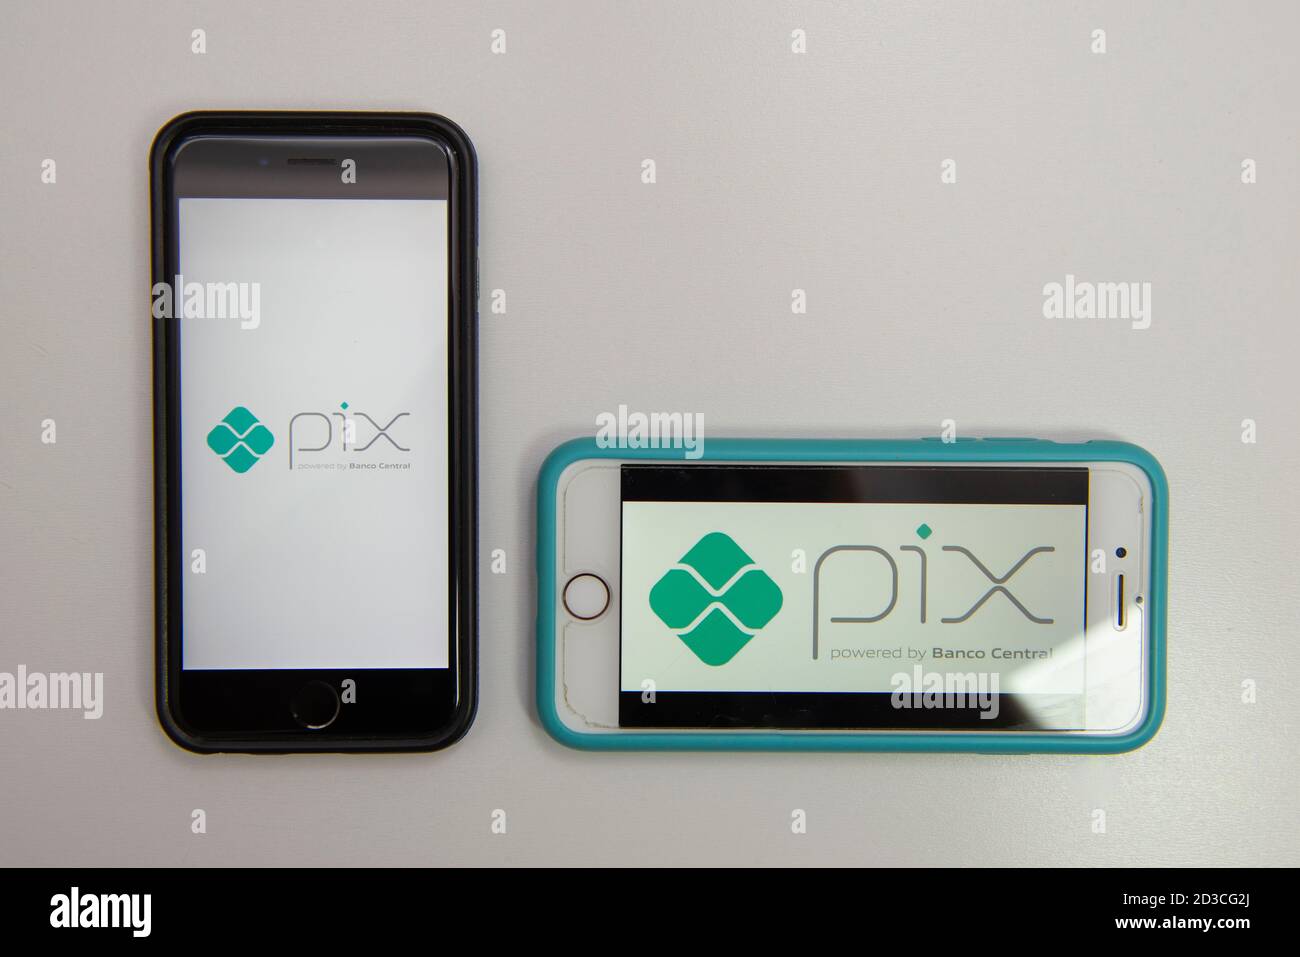 Florianópolis, Brasil. 07/10/2020: Dos smartphones con el logo PIX, nuevo sistema de pago y transferencia instantánea de dinero desde el Banco Central de Brasil. S Foto de stock